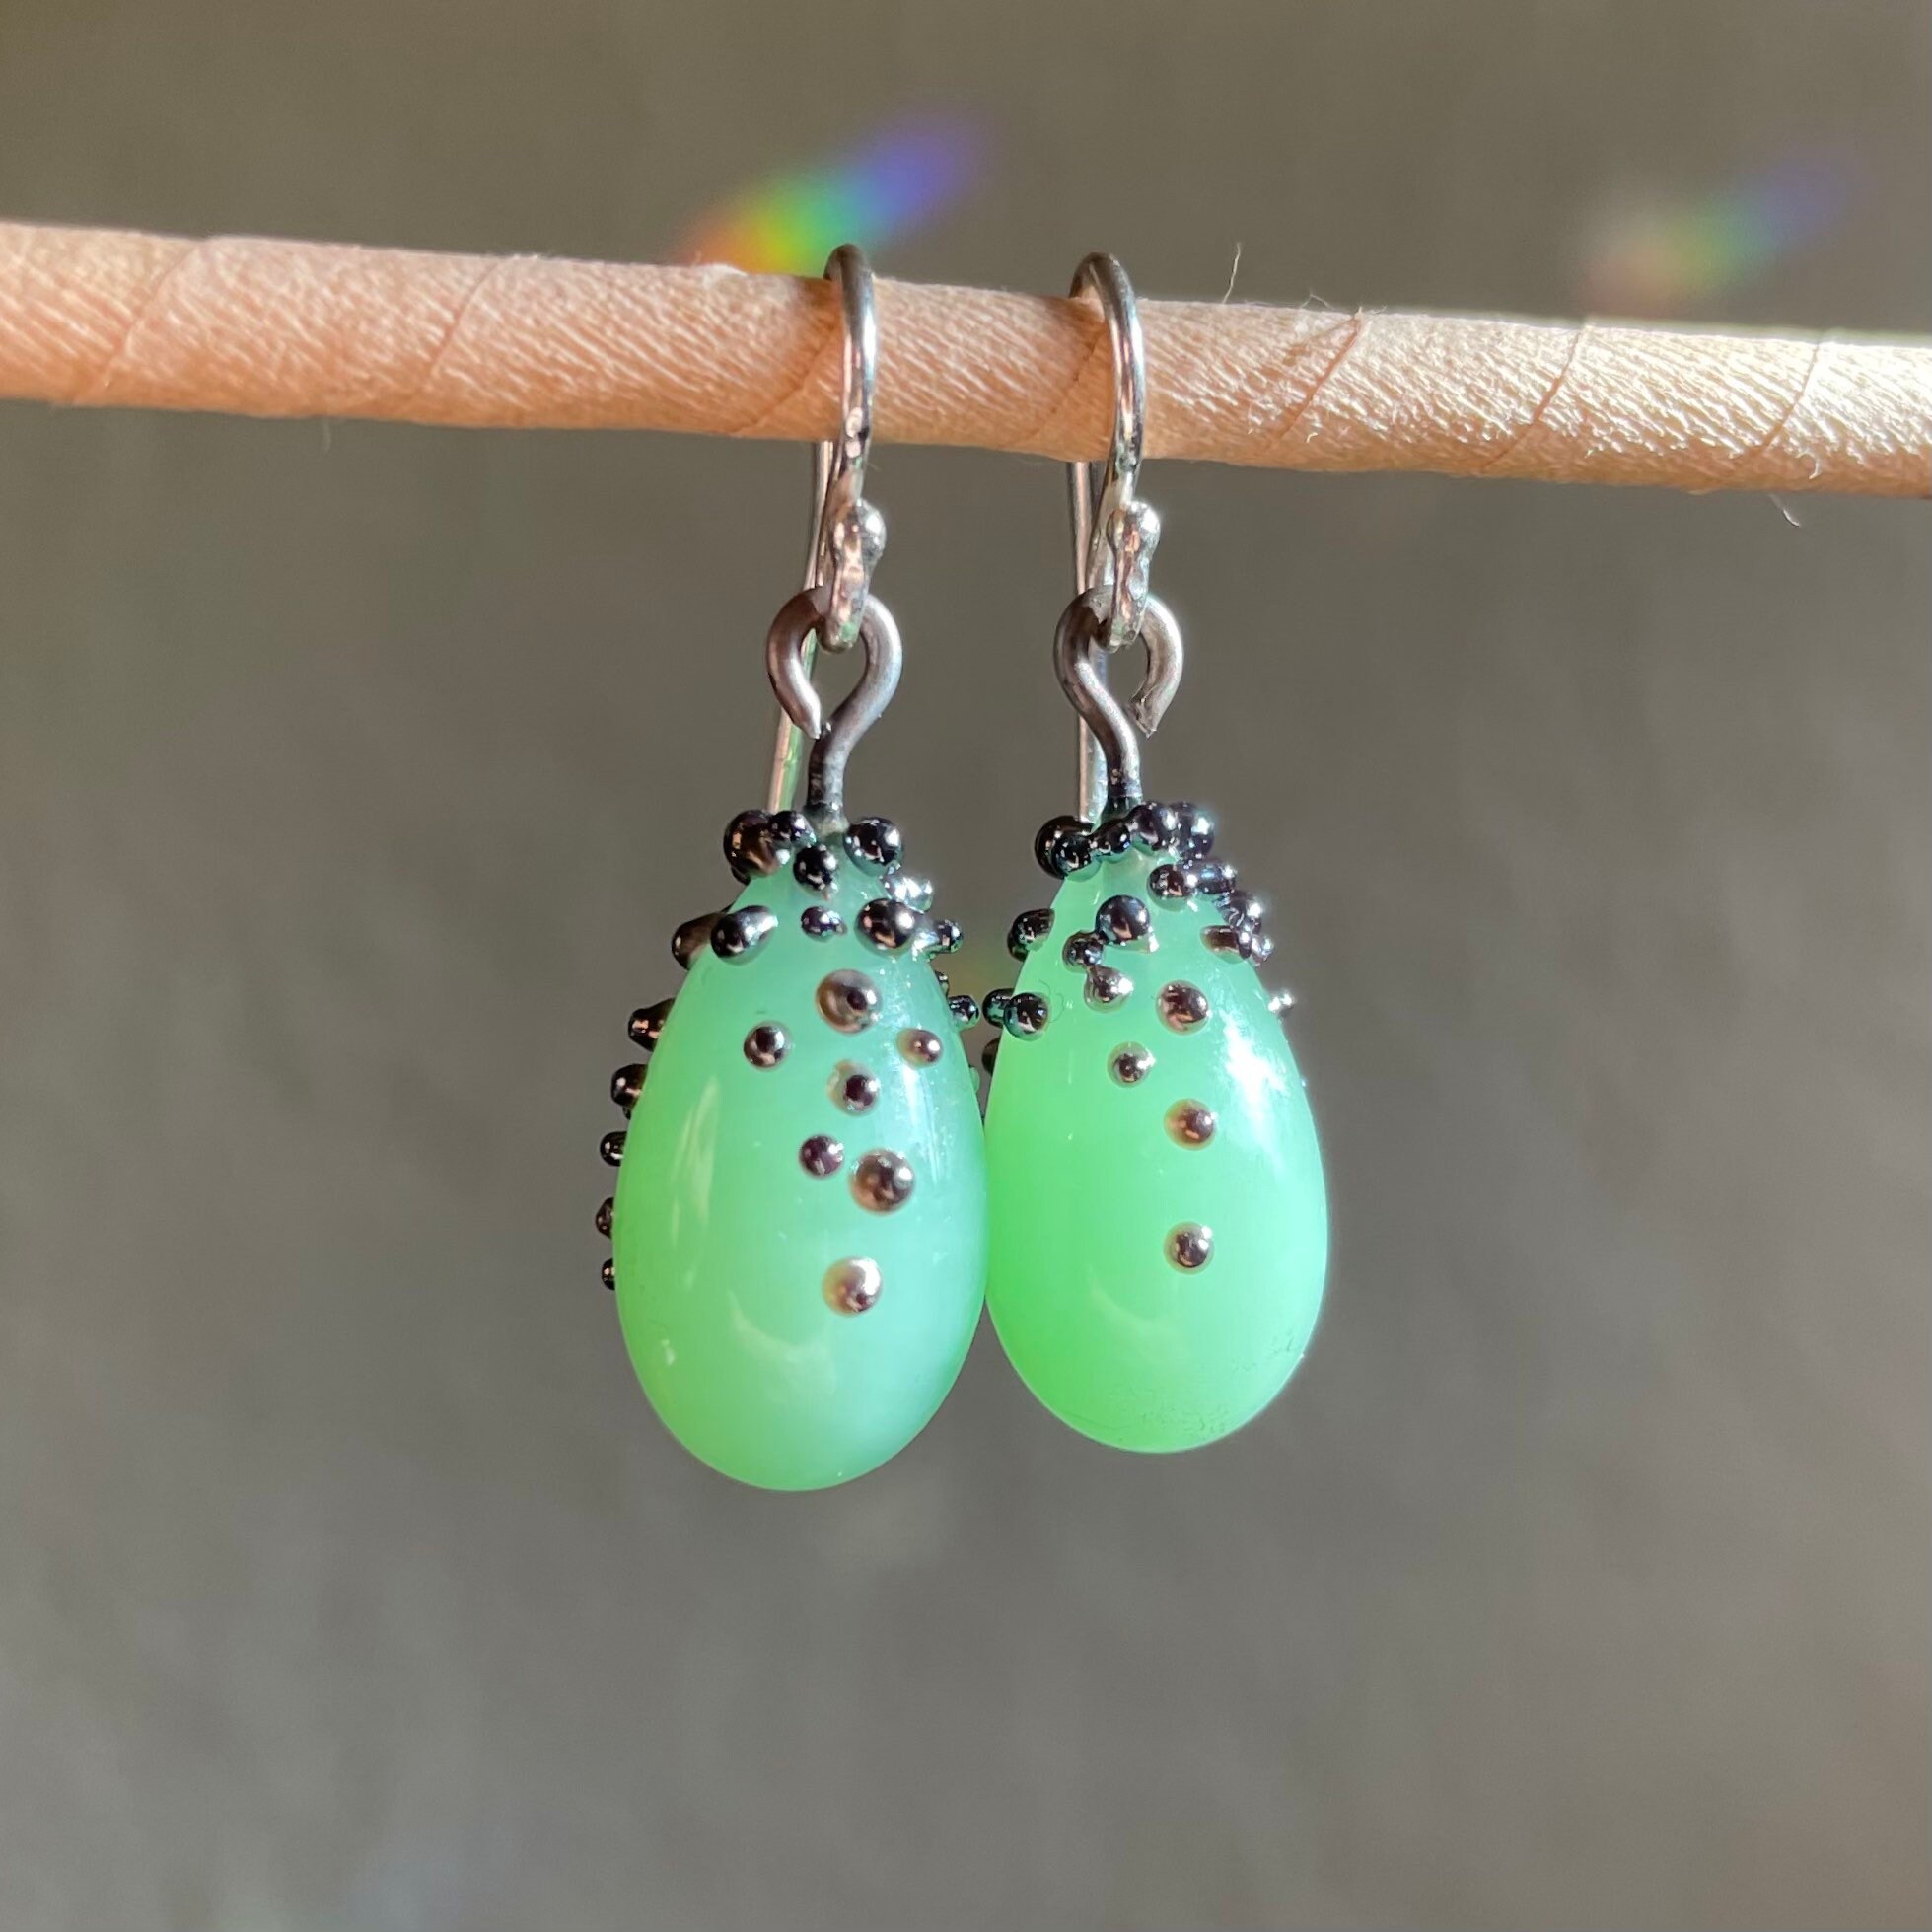 Translucent Jade Green Mini Drop Flamework Earrings - Etsy